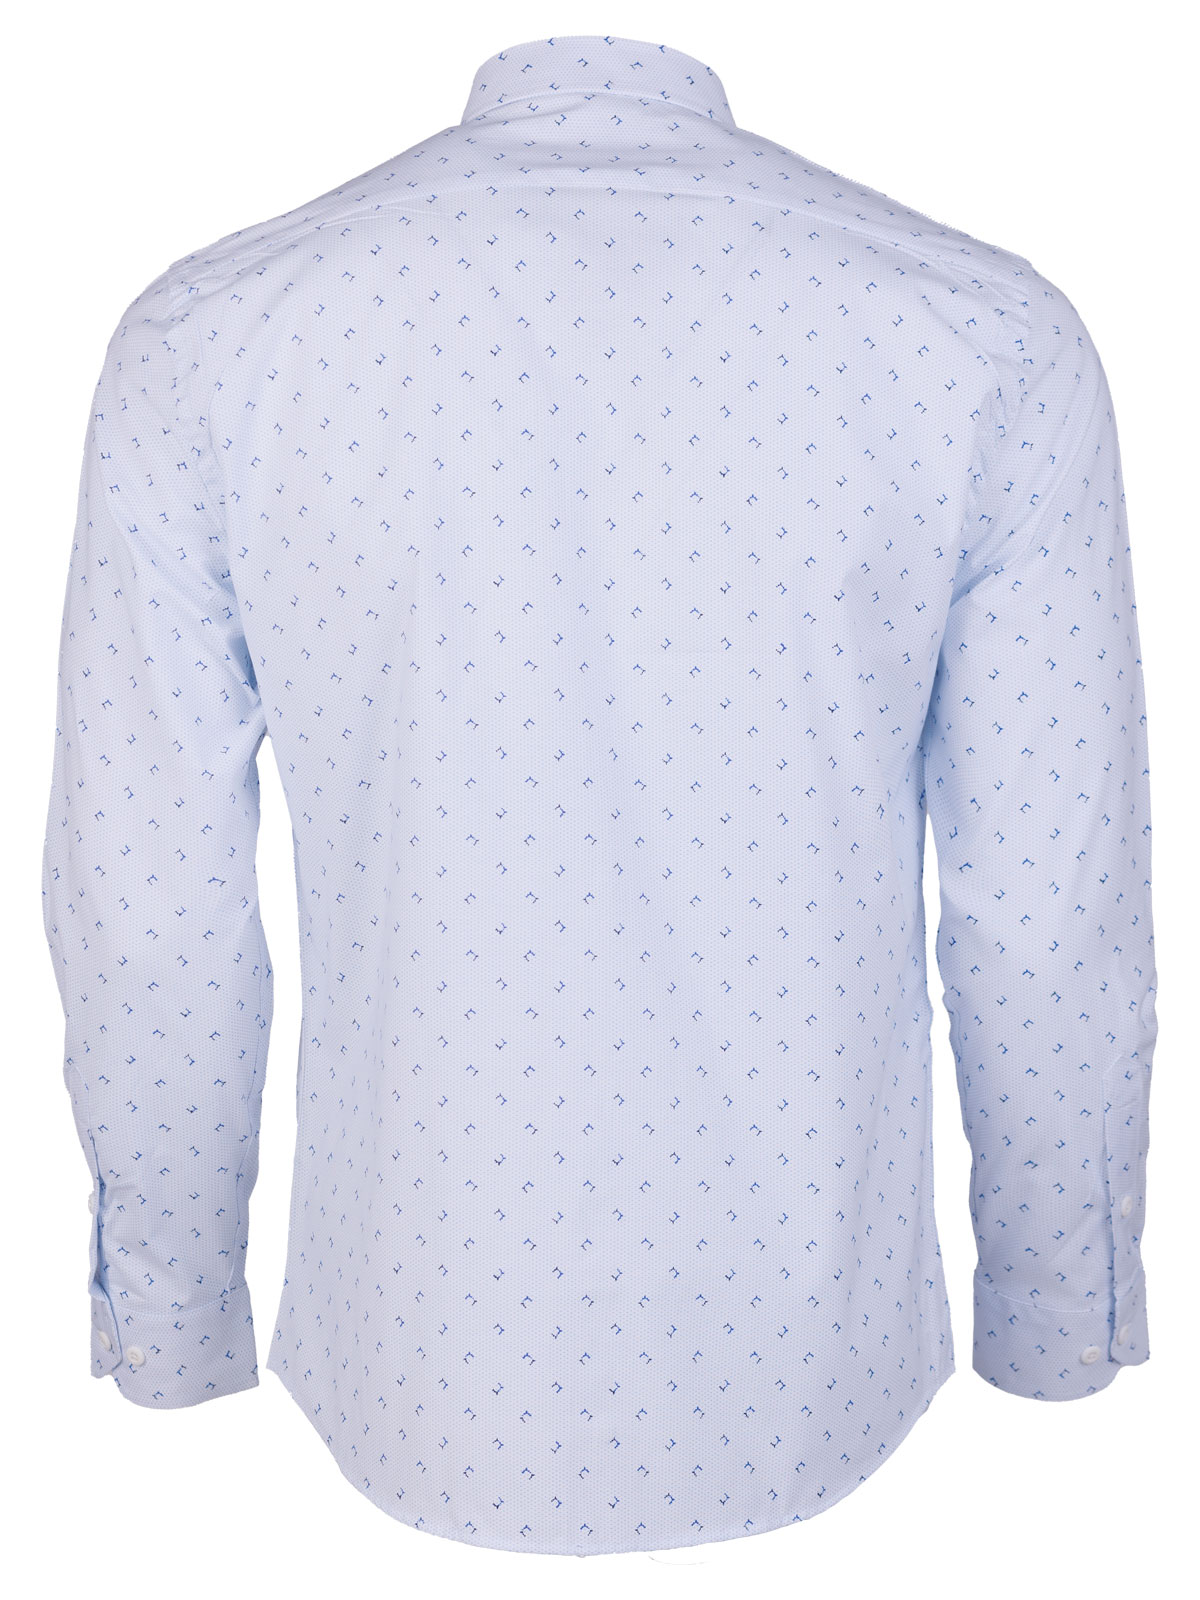 Λευκό πουκάμισο με μπλε πουά max - 21602 € 44.43 img2